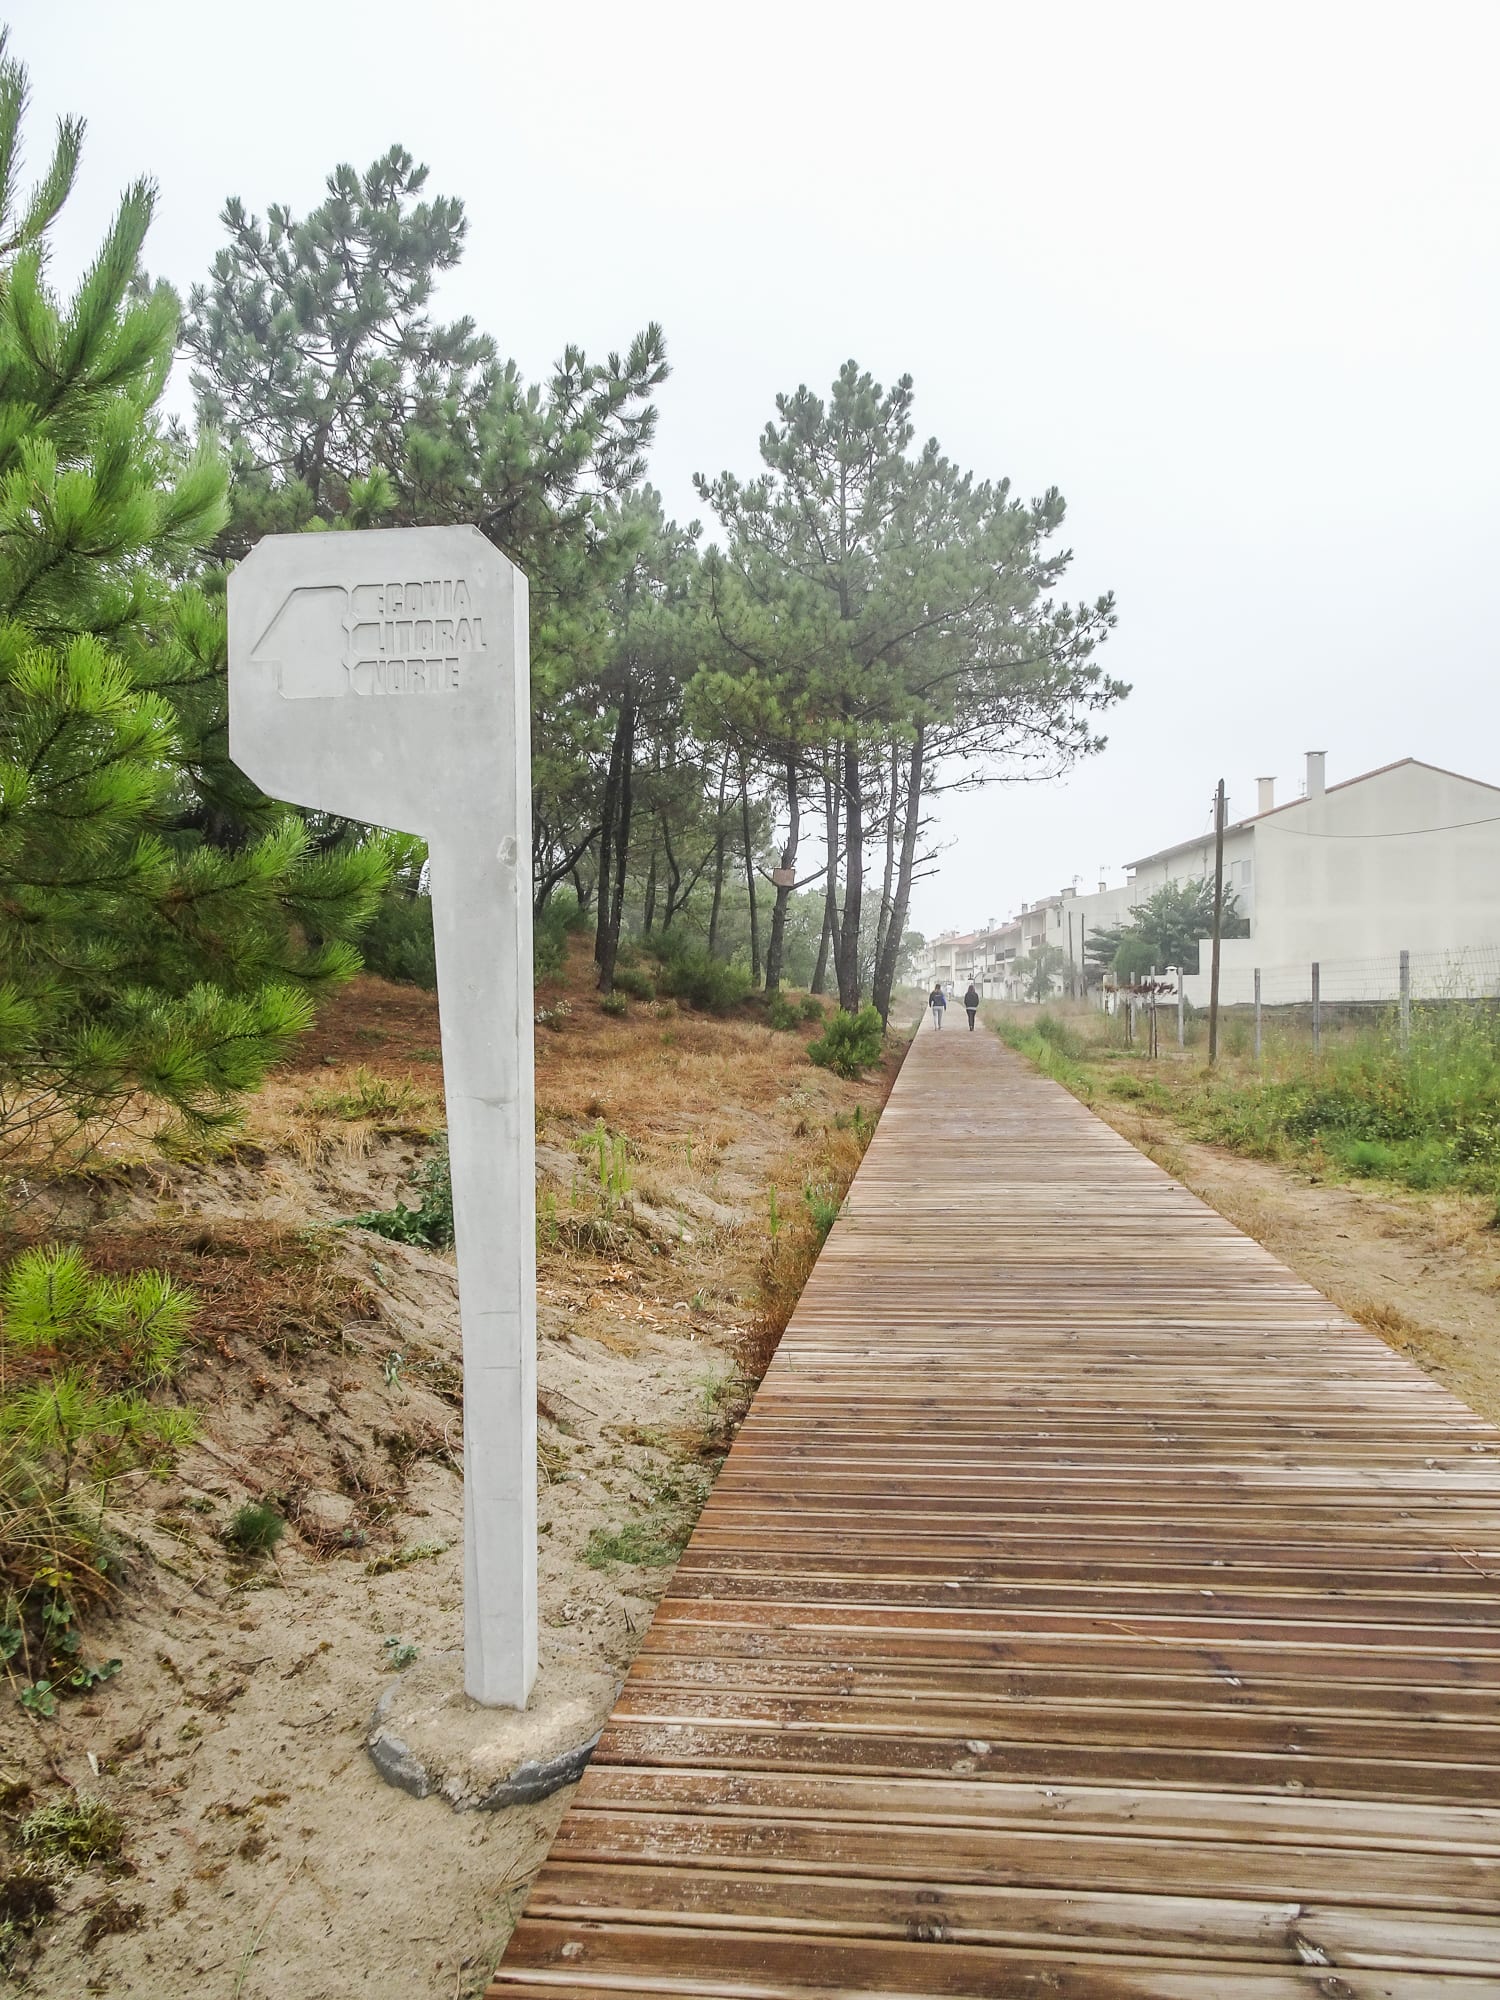 Holzpfad und Markierung im ökologischen Park Ecovia do Litoral in Cepães am Jakobsweg Portugal